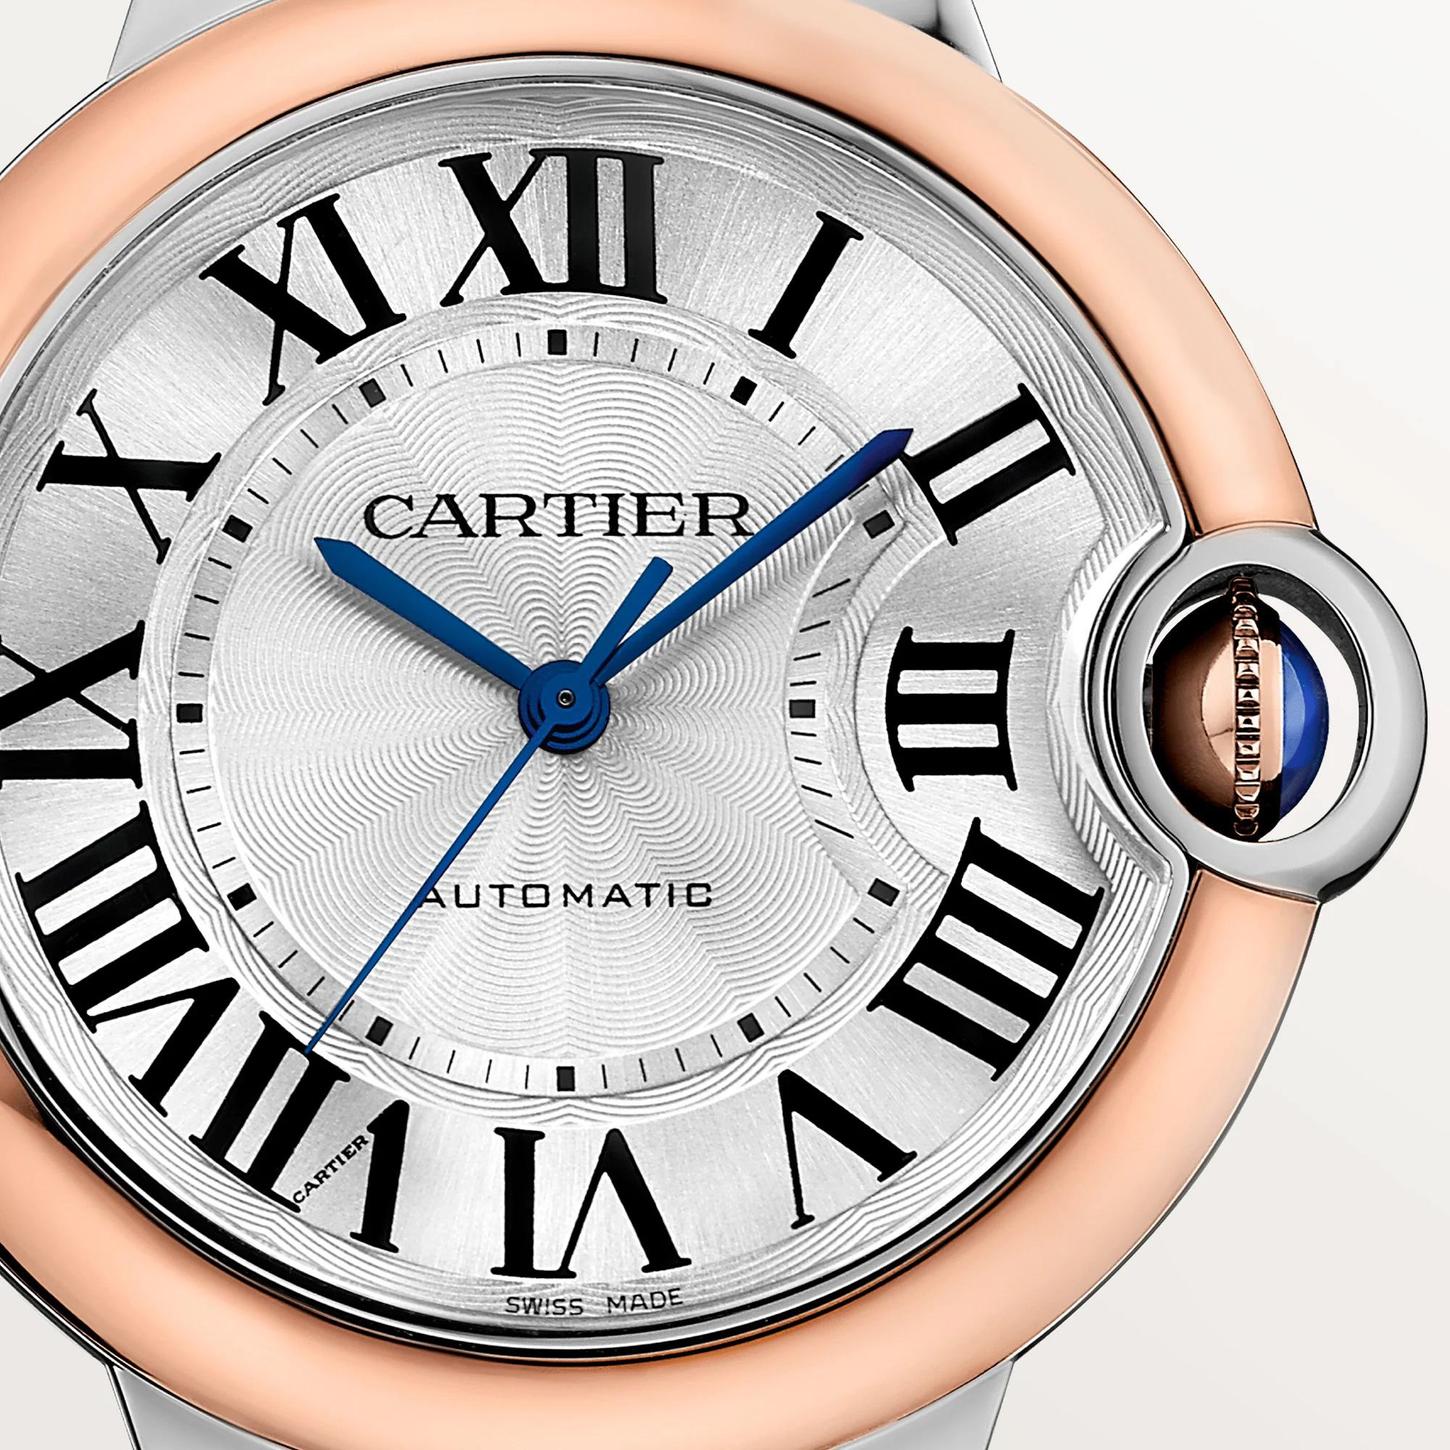 Ballon Bleu de Cartier Watch in Rose Gold, 36mm 2